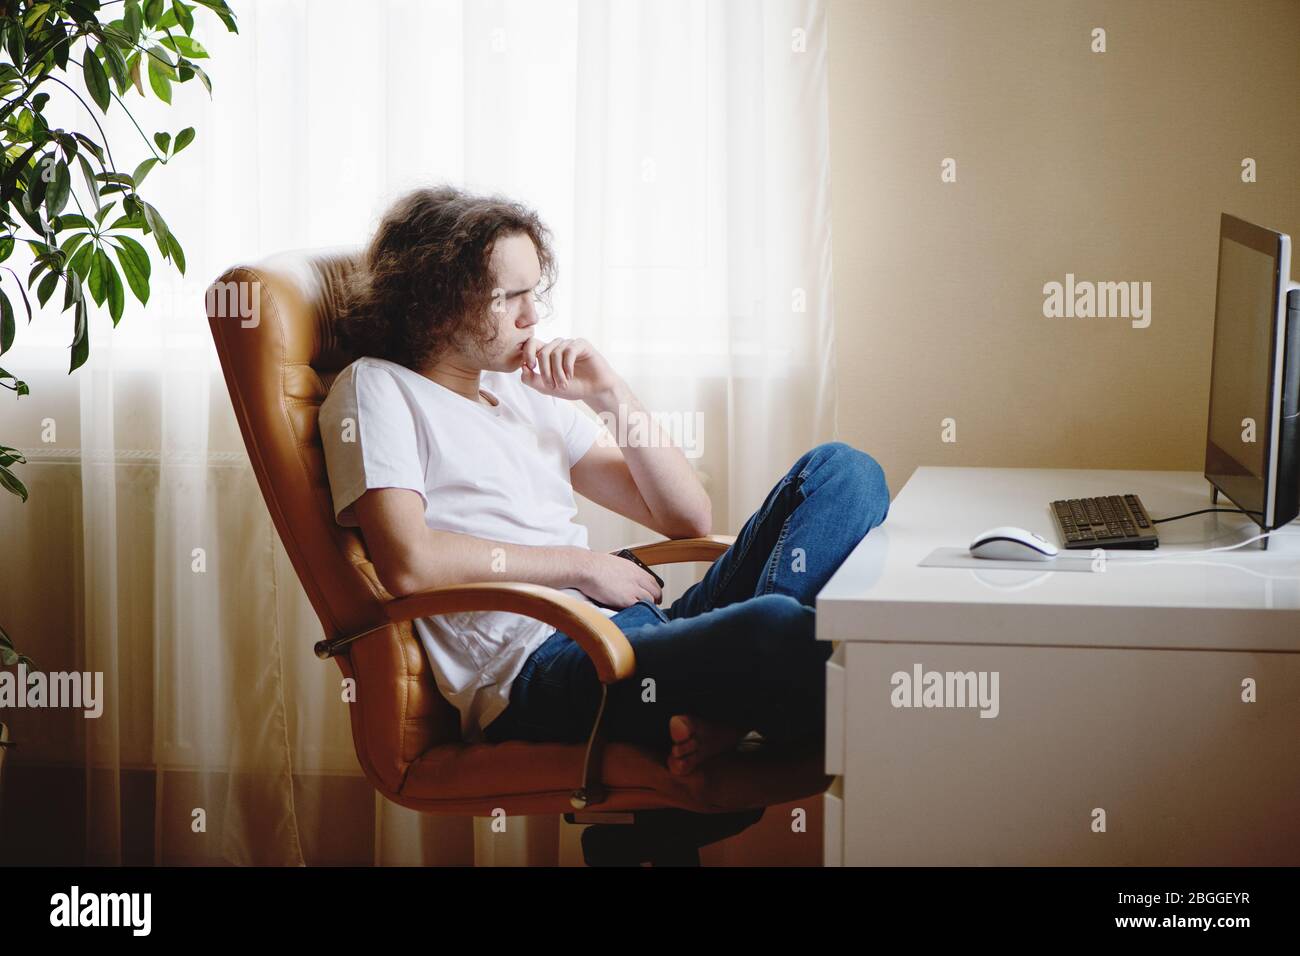 Adolescente sentado en silla y concentrado estudiando en casa asistiendo a clases en línea. Foto de stock